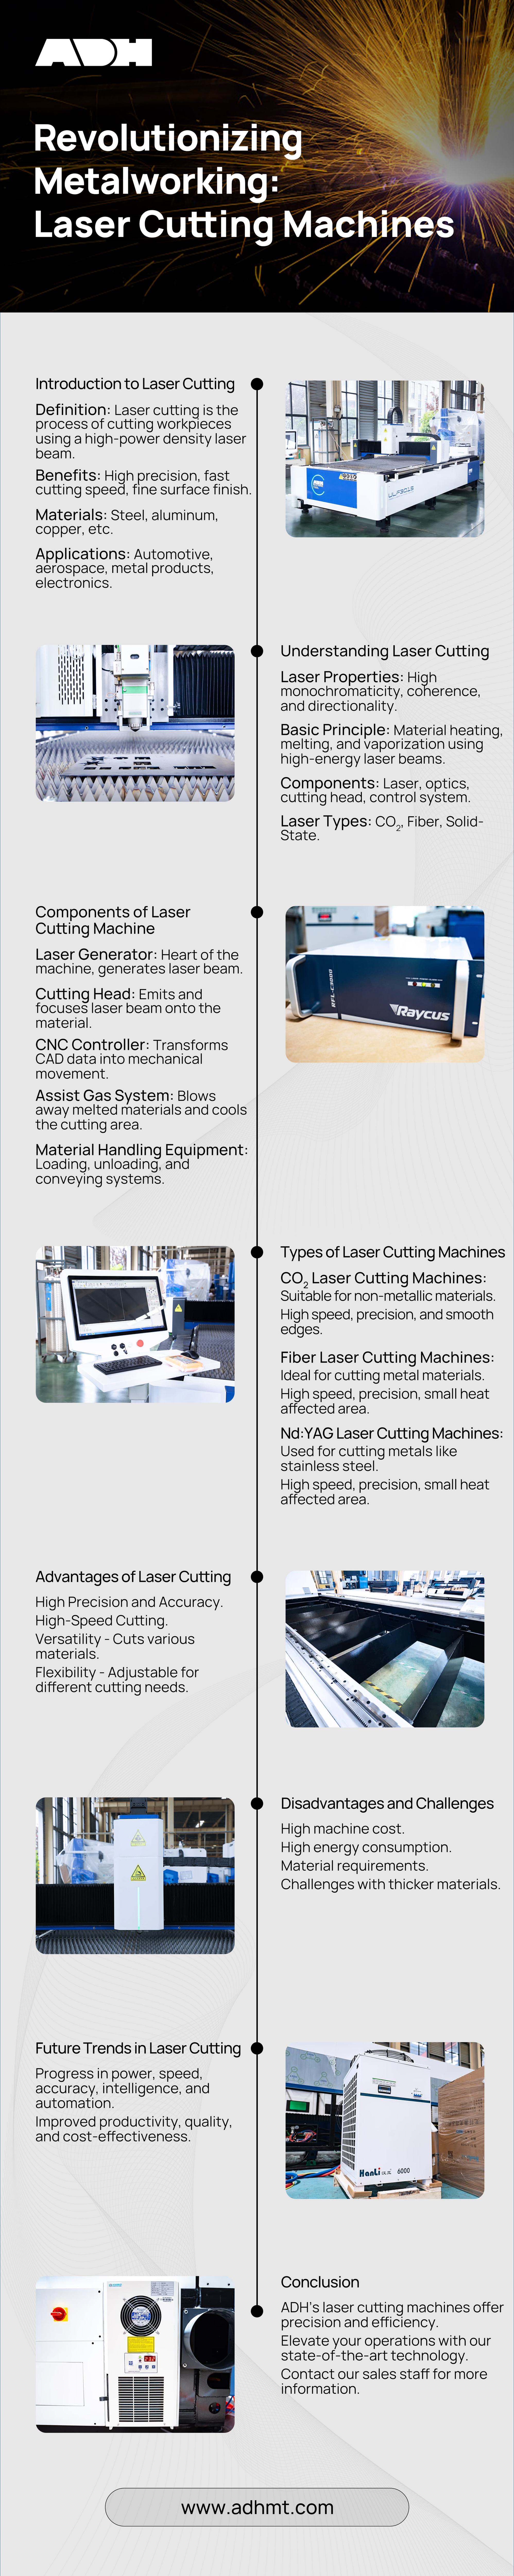 infographie sur les machines de découpe au laser